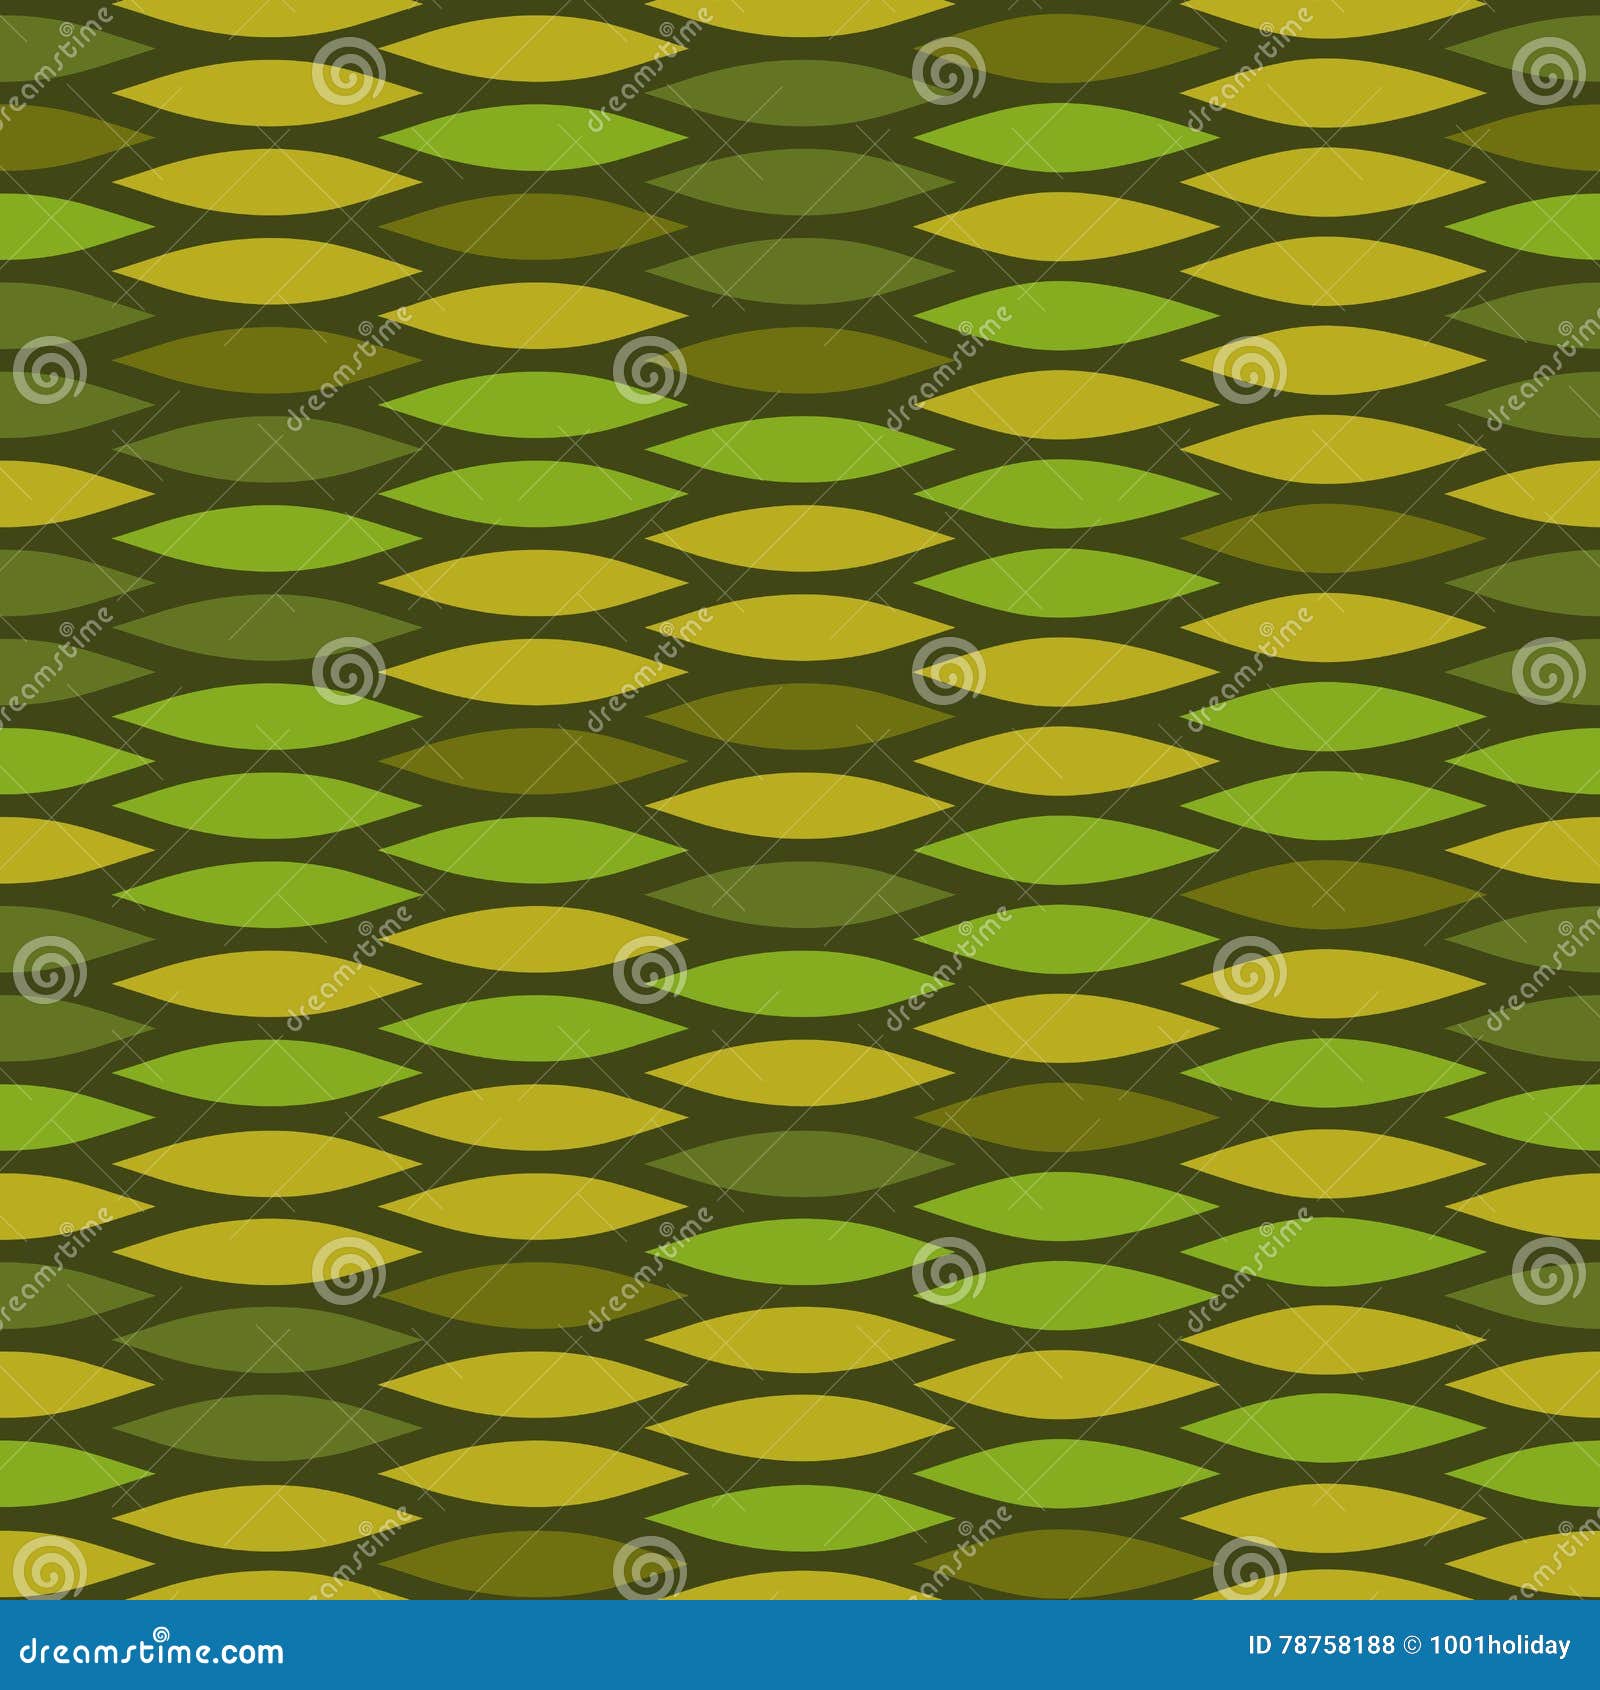 Green seamless snake skin pattern, Stock vector